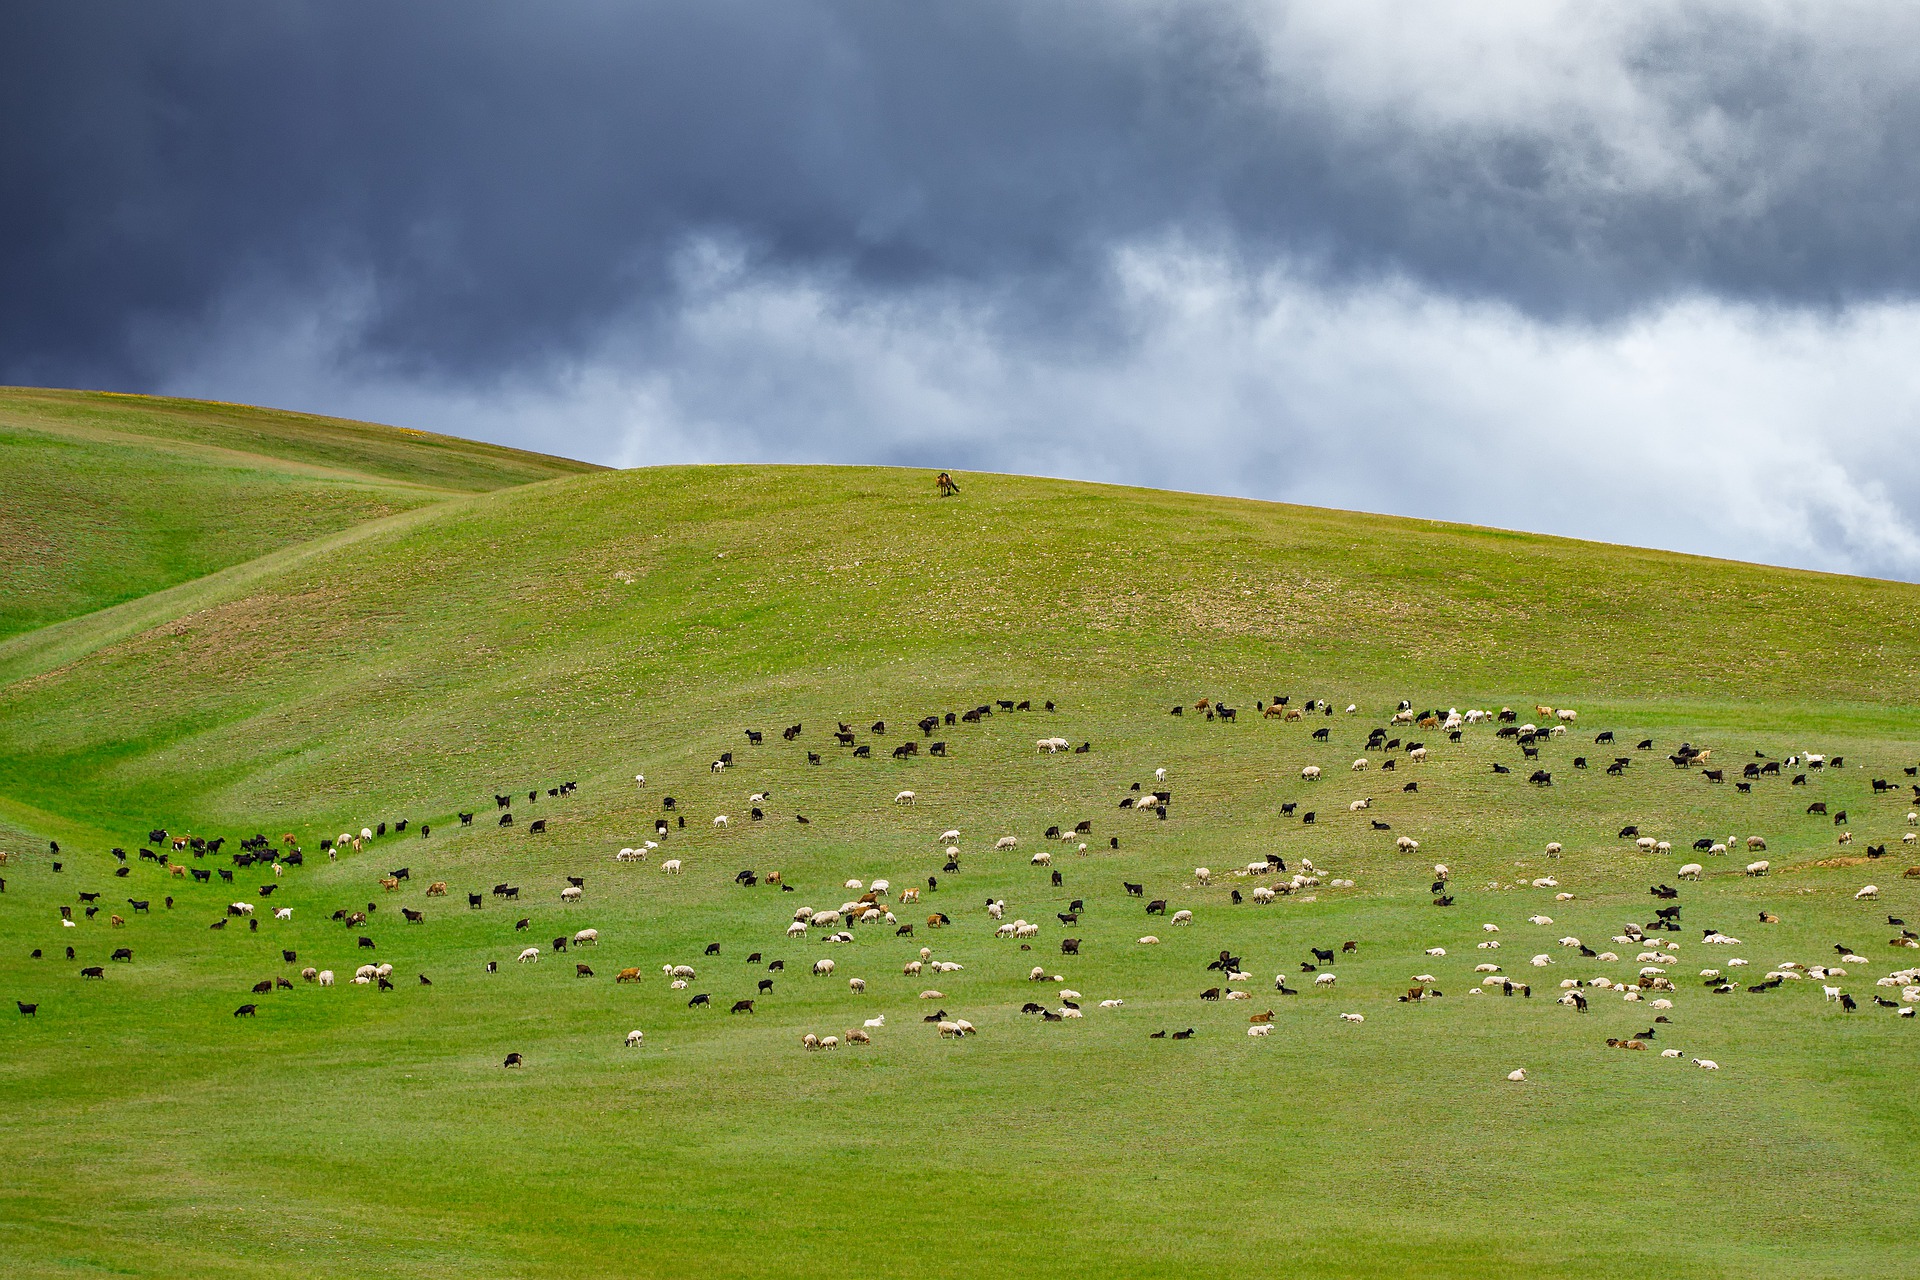 양떼가 풀을 뜯는 몽골의 푸른 초원